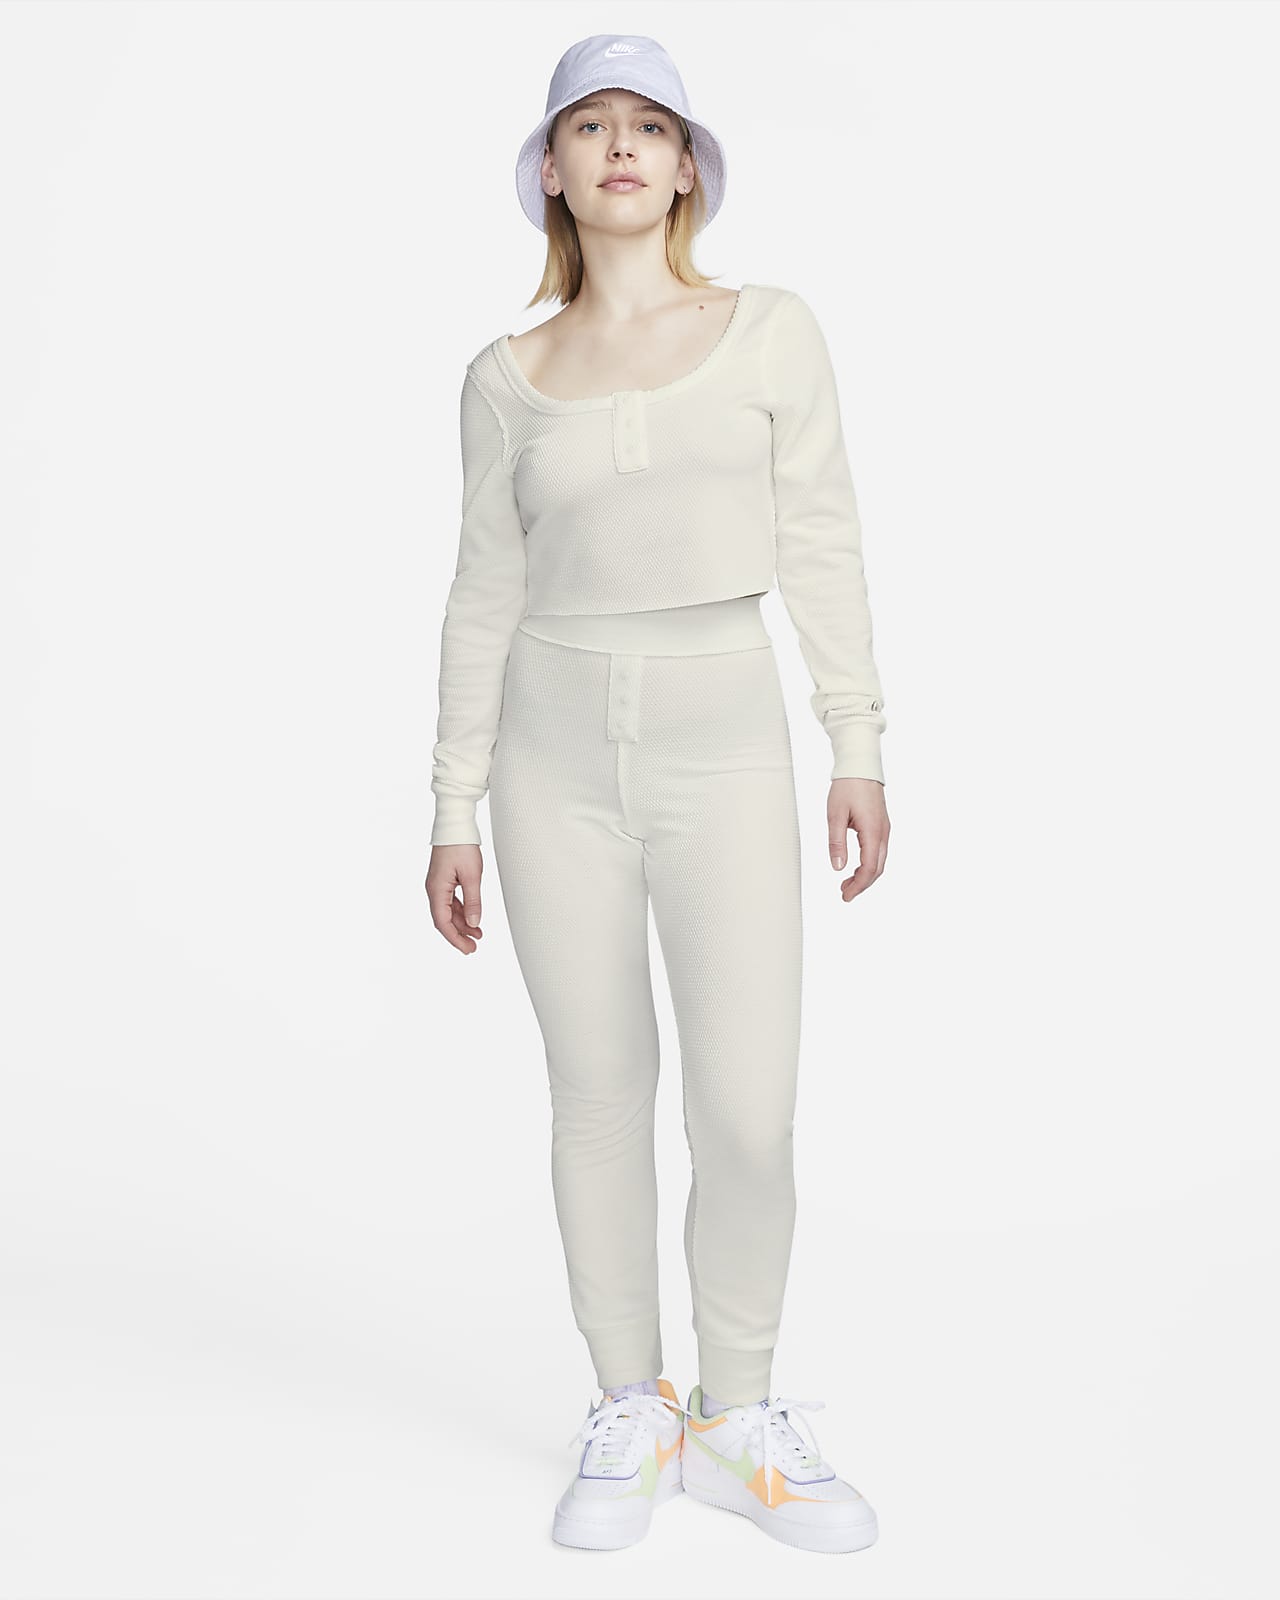 Nike Sportswear Everyday Modern Crop Women\'s Top. Long-Sleeve